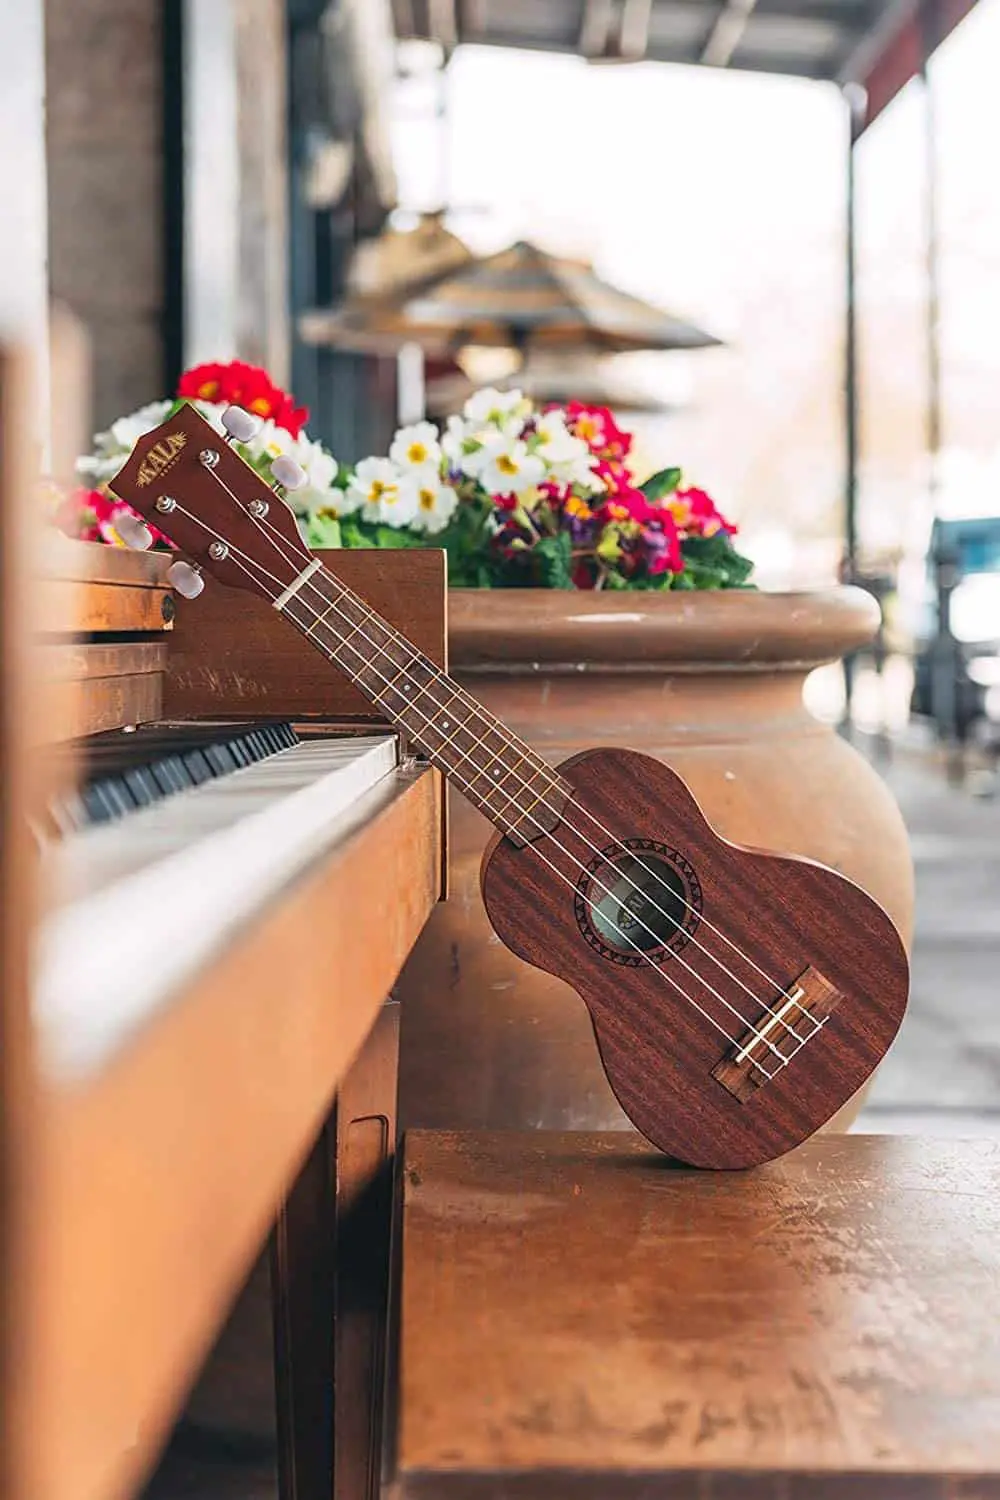 Best ukulele under $ 100: Kala KA-15S Mahogany Soprano